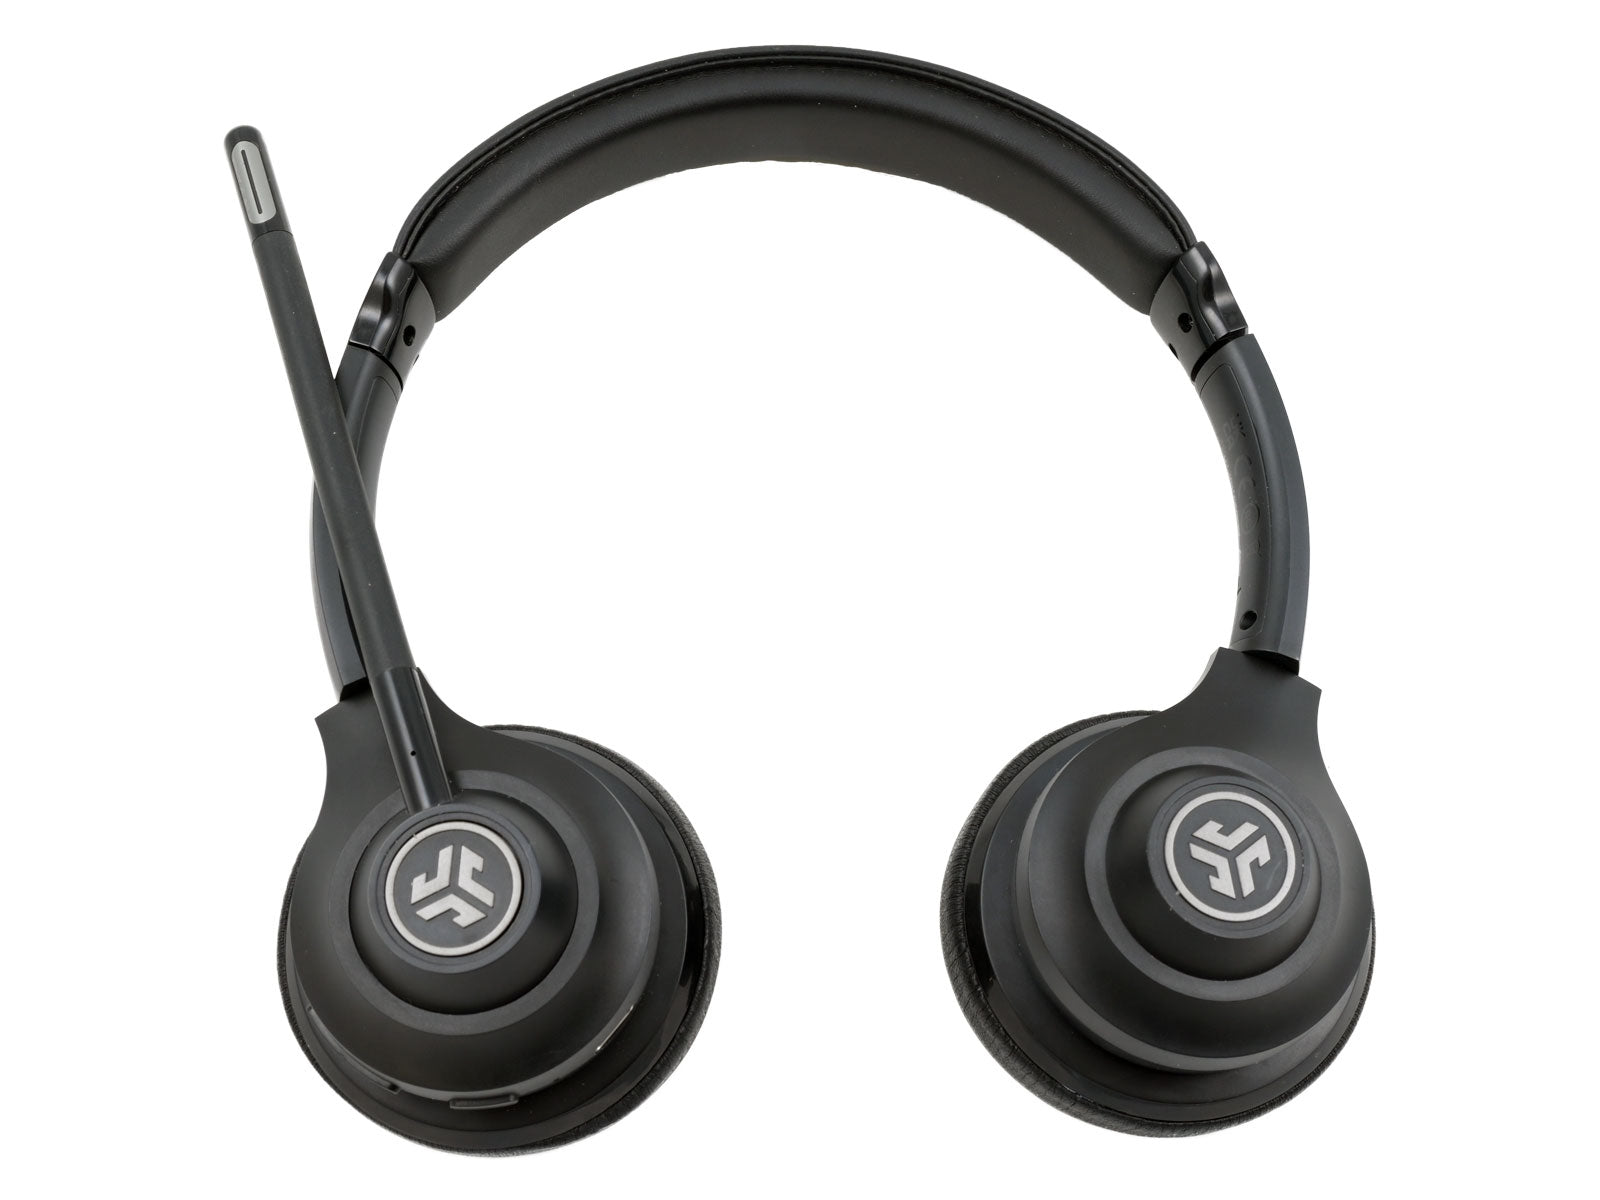 JLab Go Work Wireless & Wired On-Ear Headset Schwarzer Over-Ear-Bluetooth-Kopfhörer mit gepolsterten Ohrmuscheln und einem verstellbaren Mikrofon an der rechten Seite. Die Kopfhörer verfügen über einen gepolsterten Kopfbügel und kreisförmige Logos auf jeder Ohrmuschel.